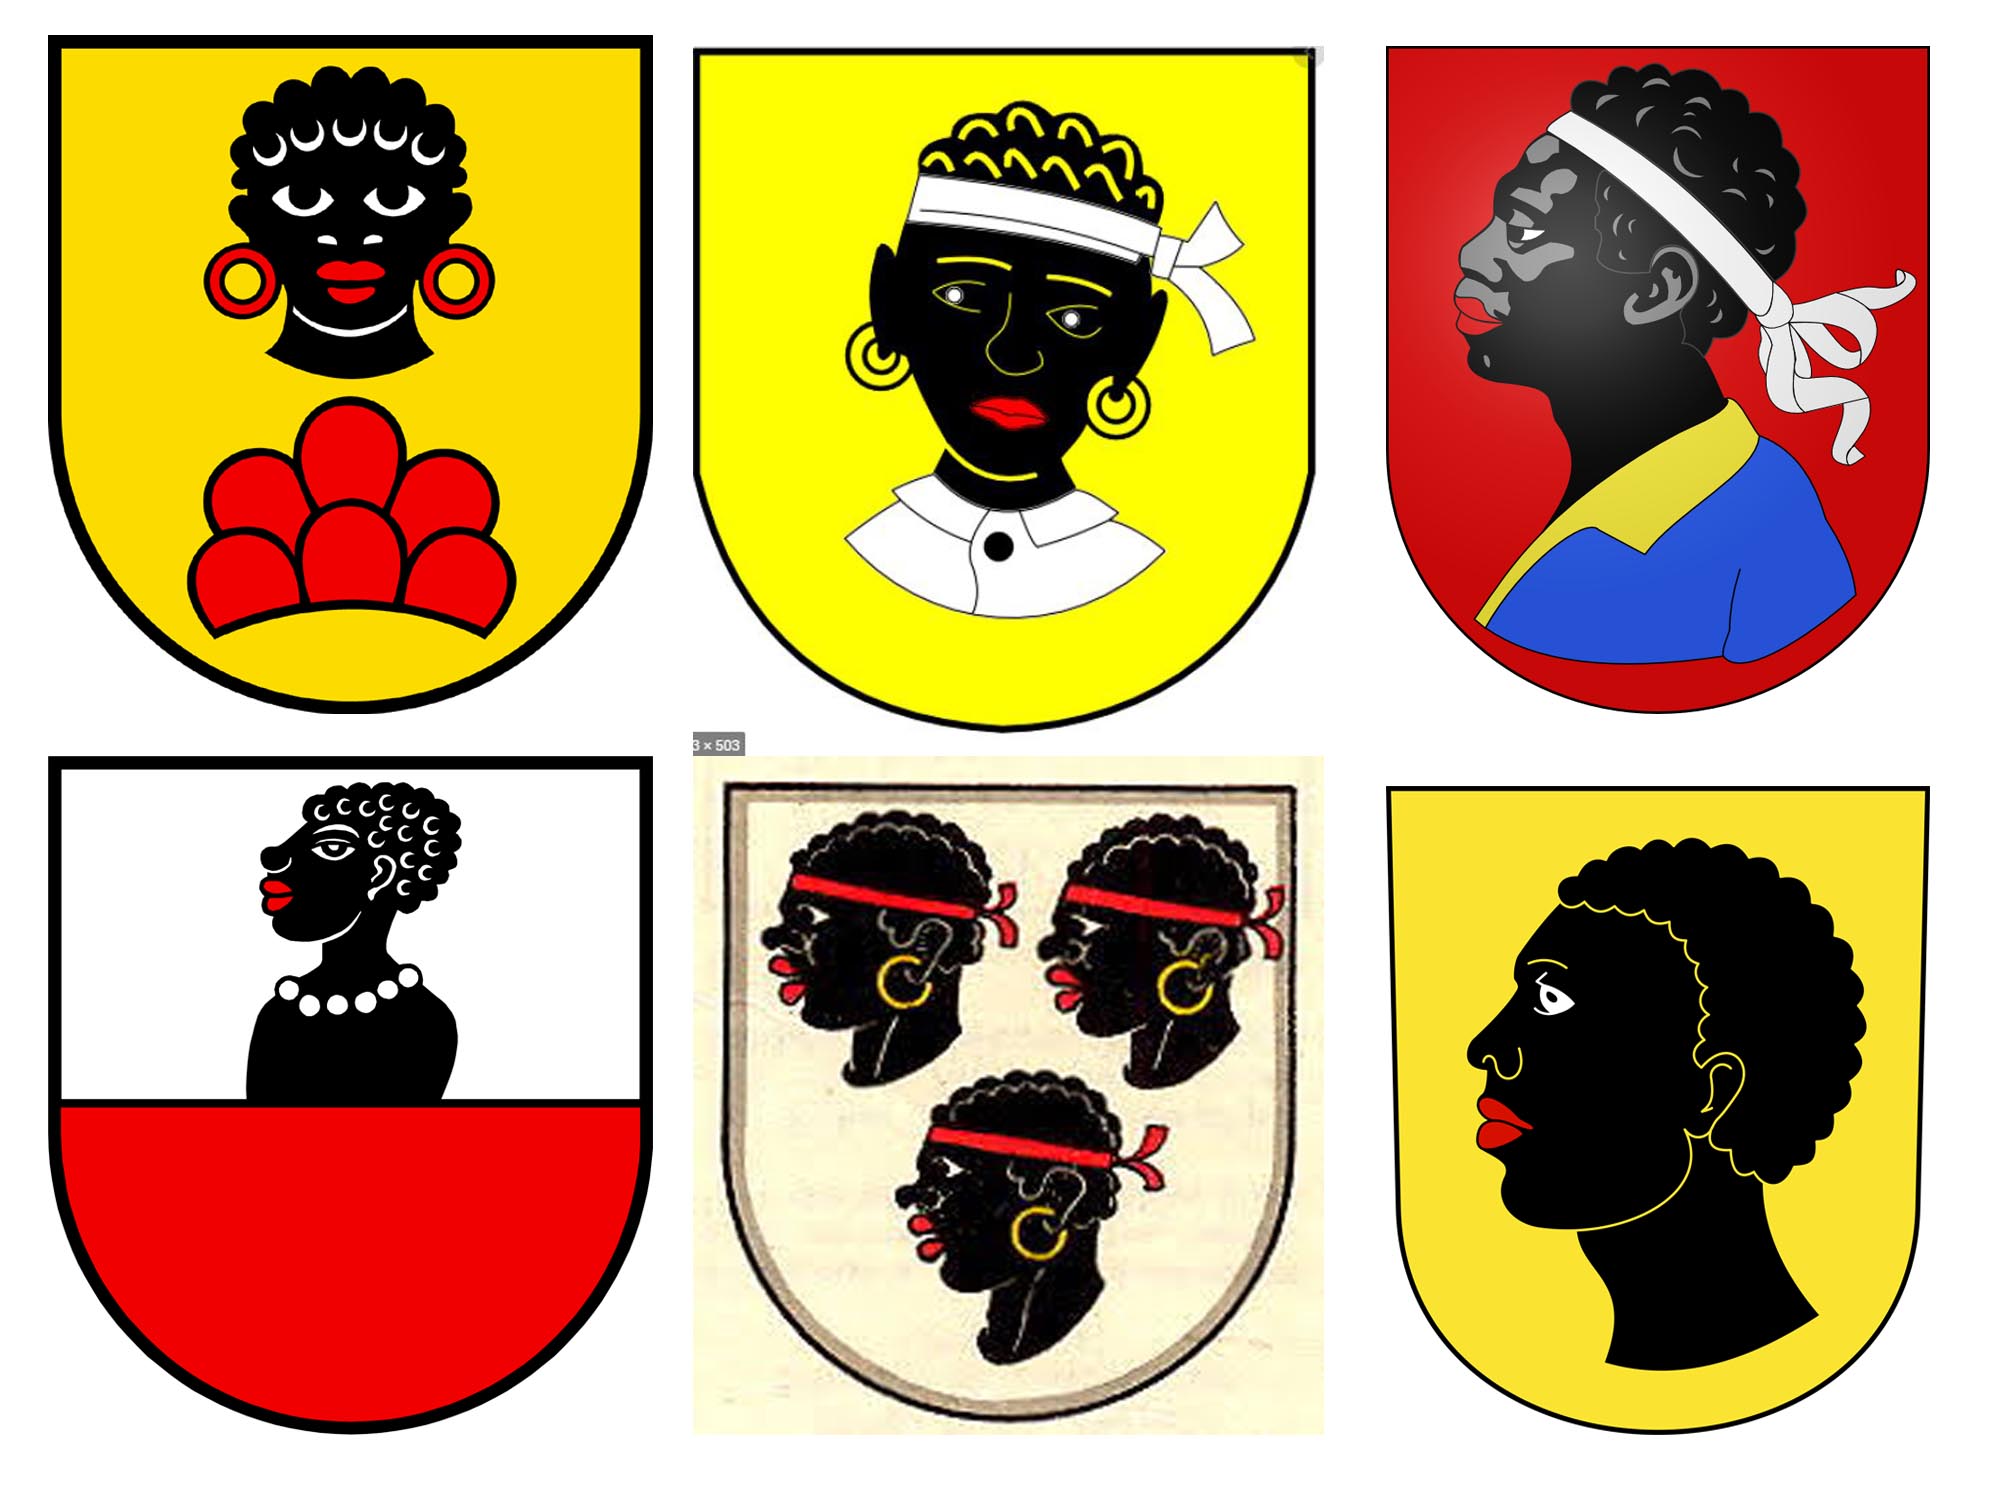 diversi stemmi in cui è raffigurato il volto di una persona di colore.